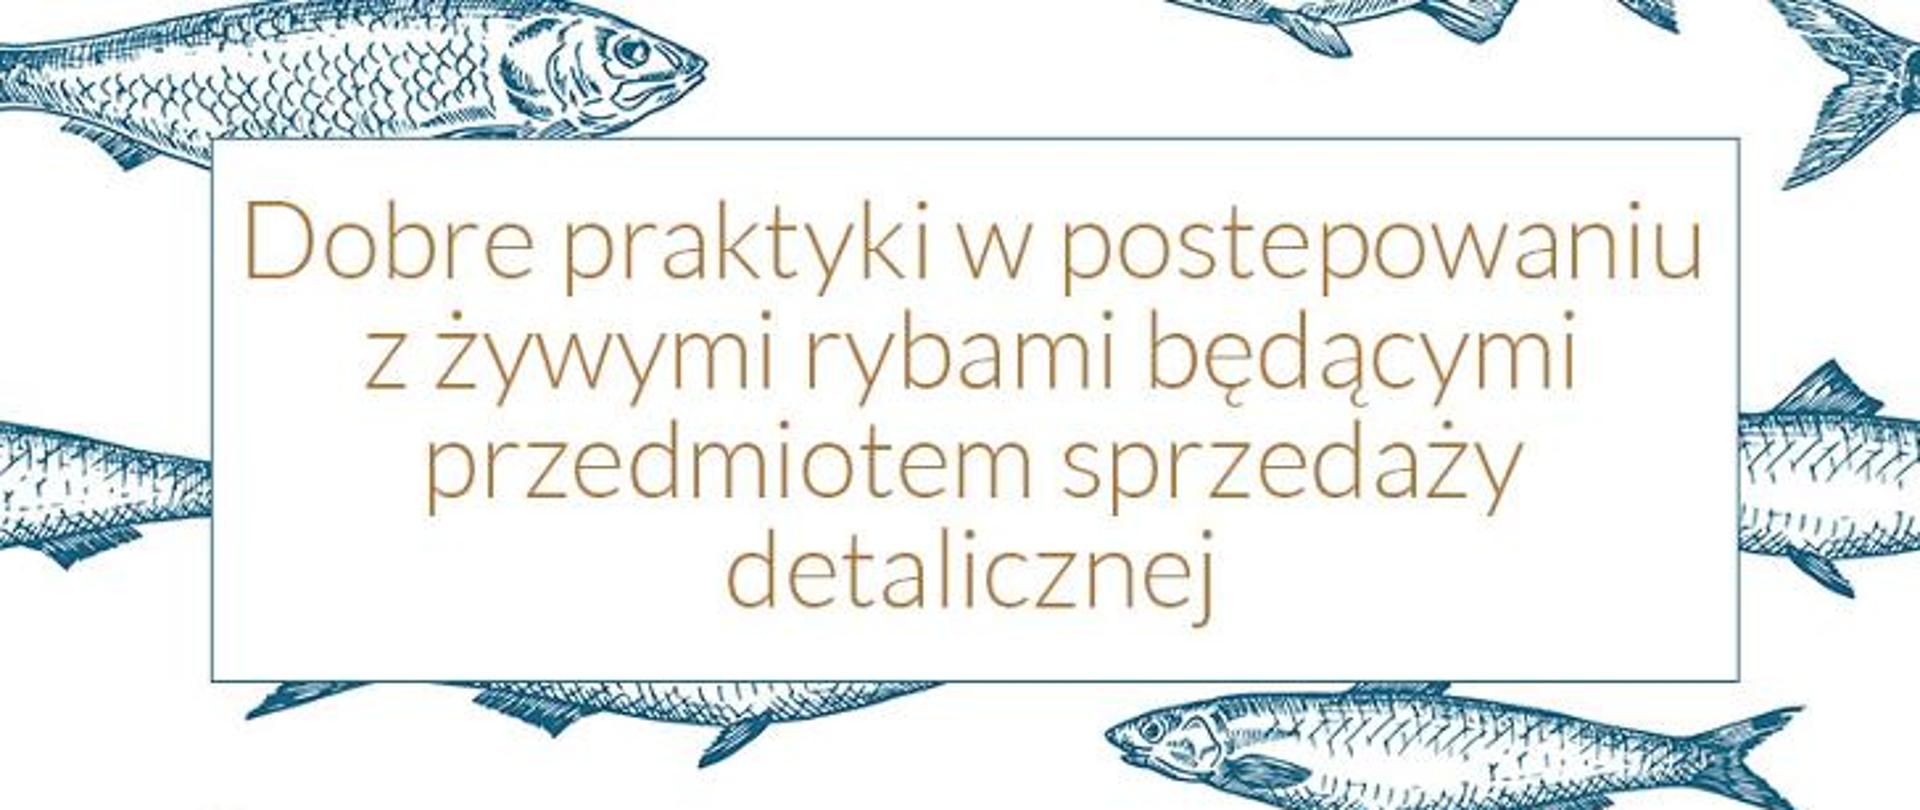 Nad rysunkami ryb w kwadratowej ramce napis: DOBRA PRAKTYKA W POSTĘPOWANIU Z ŻYWYMI RYBAMI BĘDĄCYMI PRZEDMIOTEM SPRZEDAŻY DETALICZNEJ